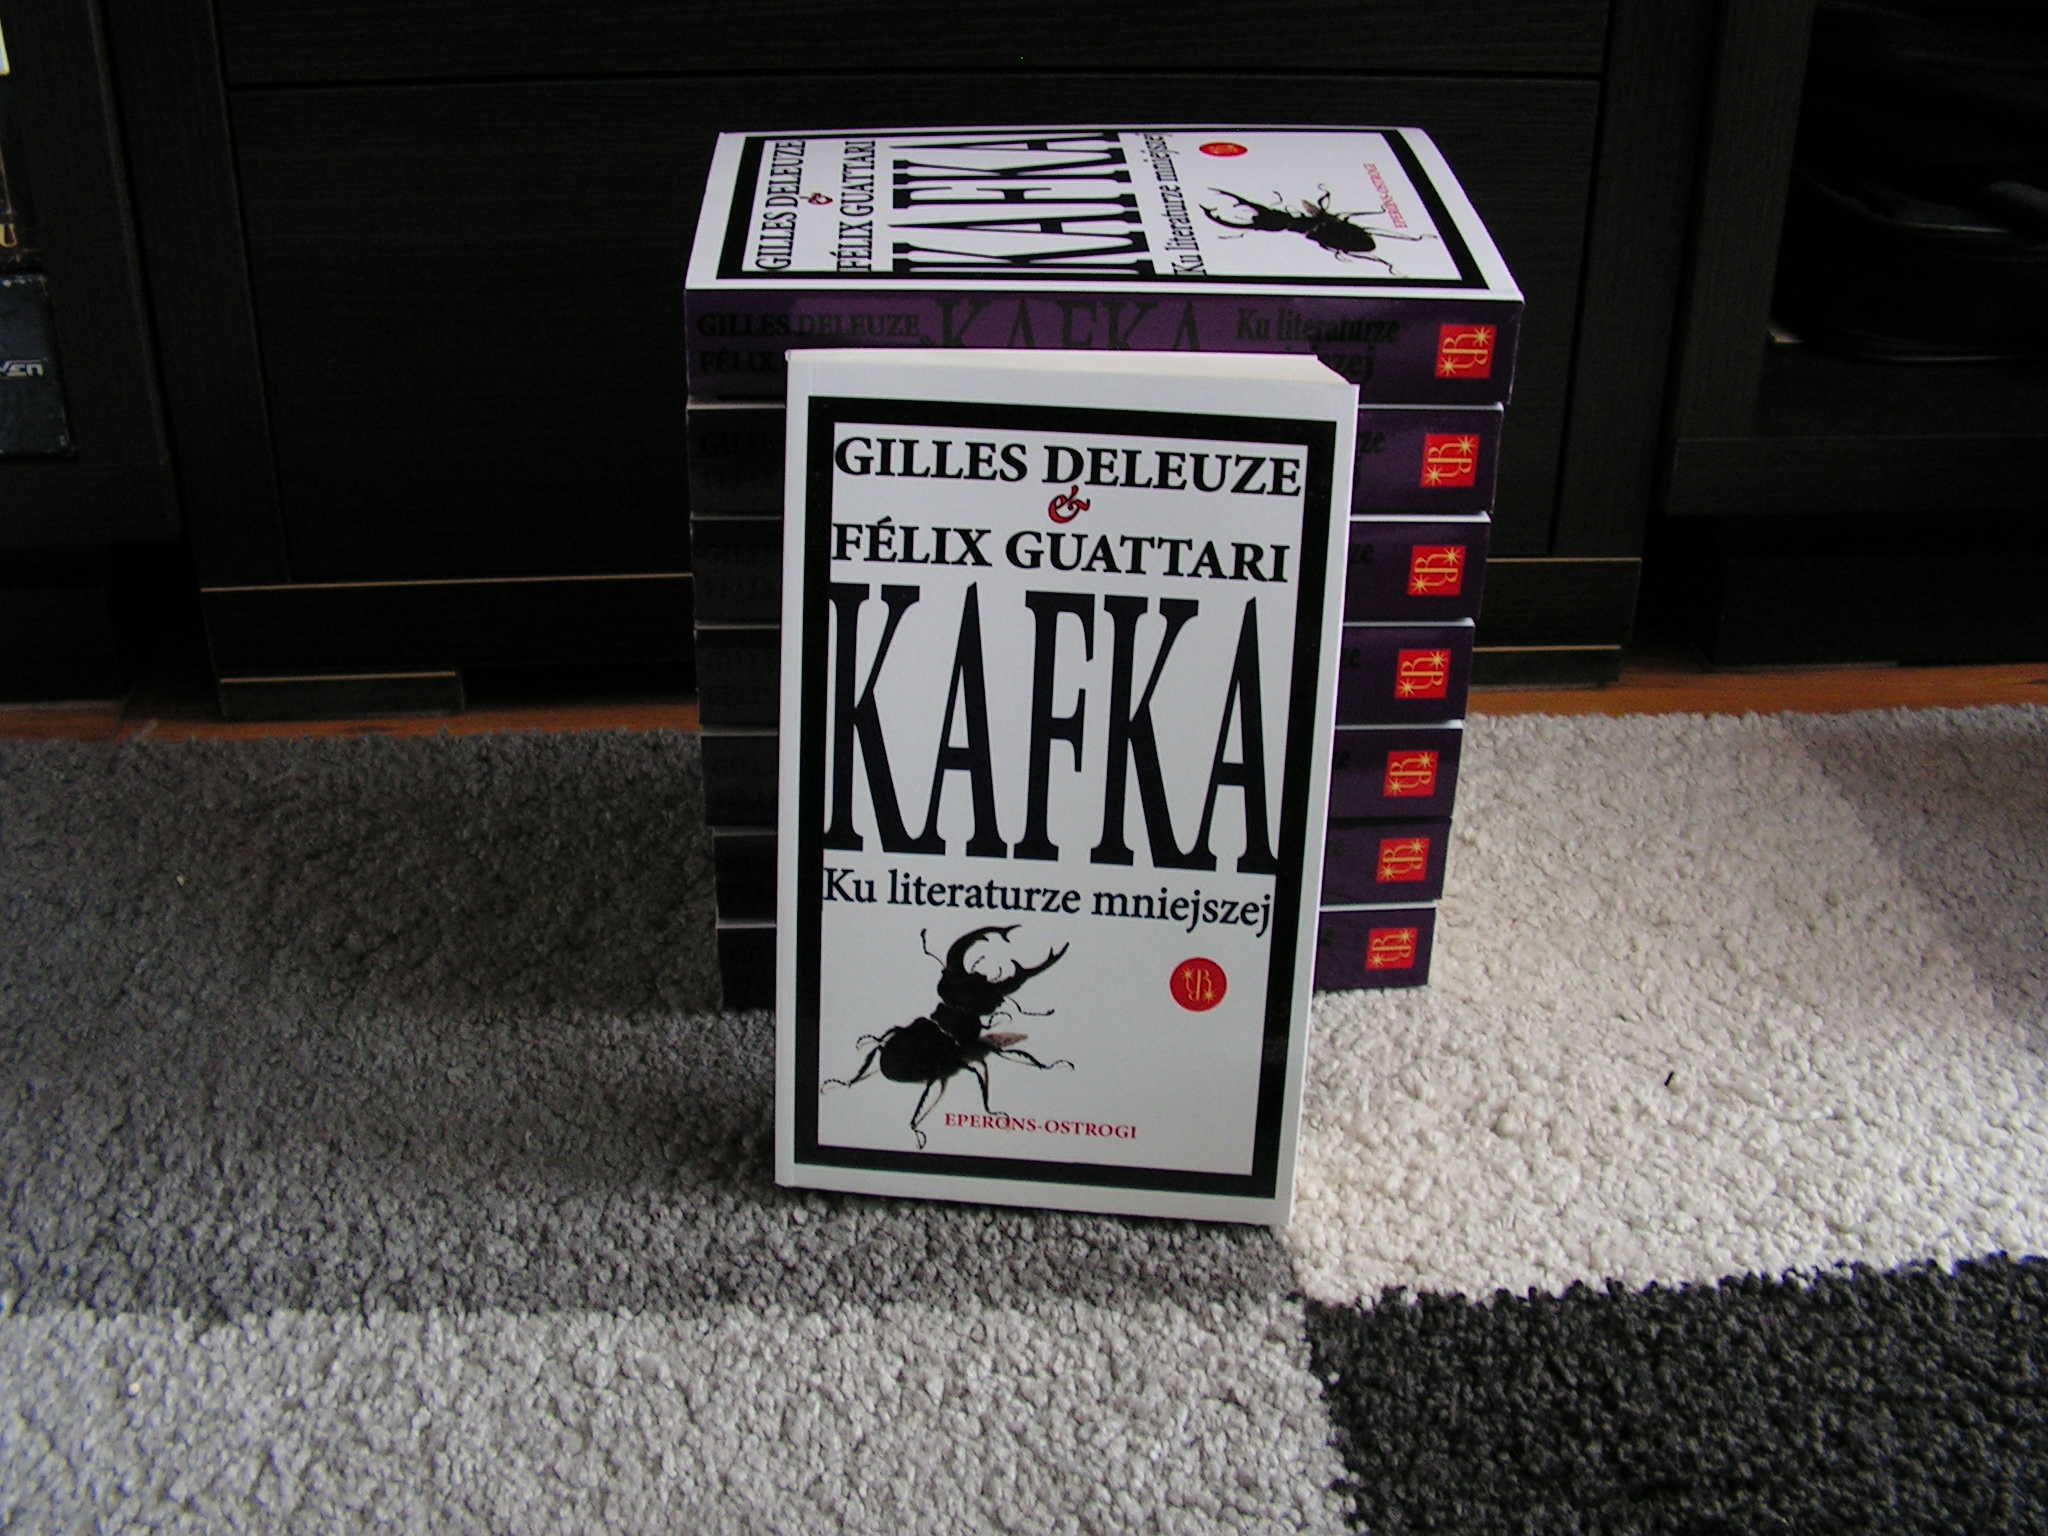 Kafka (5): Kafka odblokowany